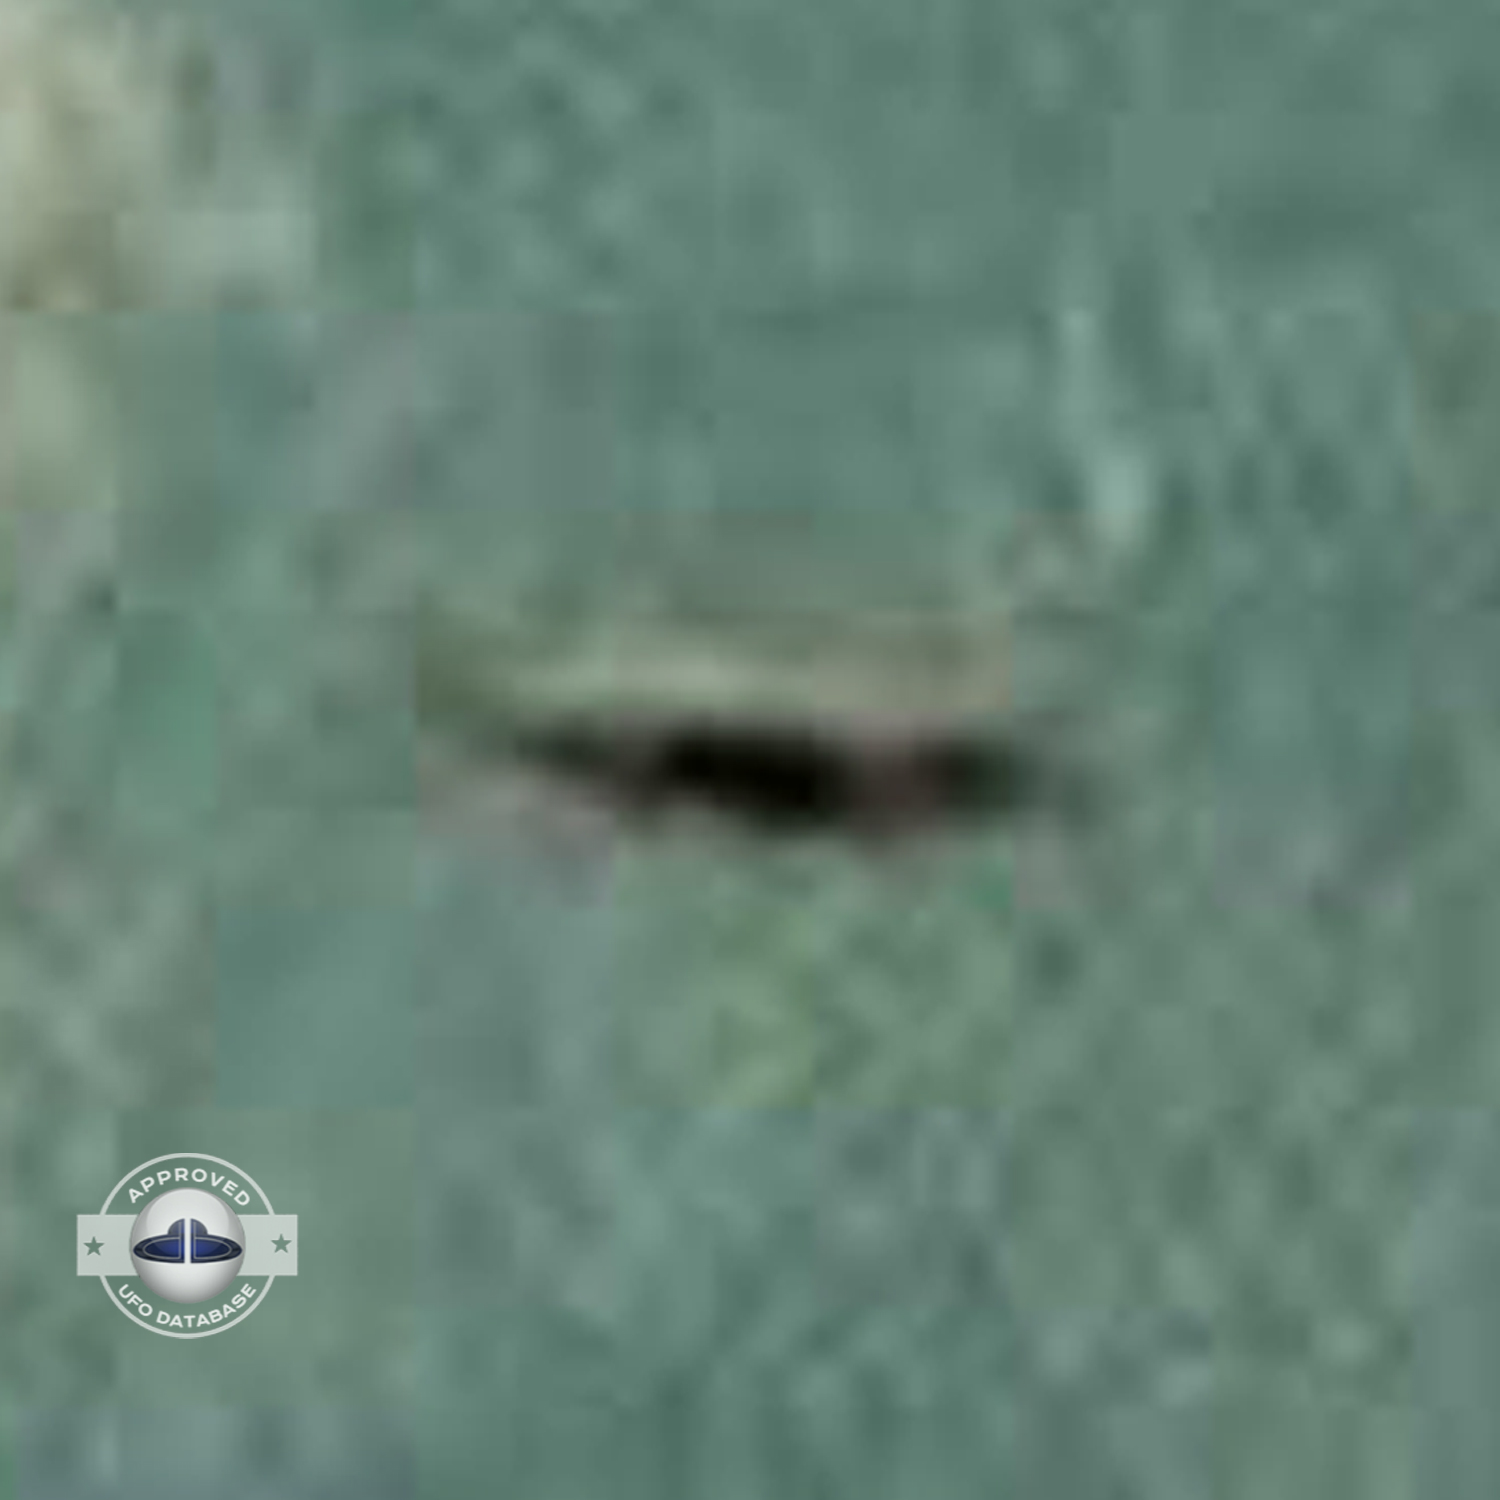 UFO Picture - UFO in Bali island, Indonesia - UFO Picture 1973 UFO Picture #38-5